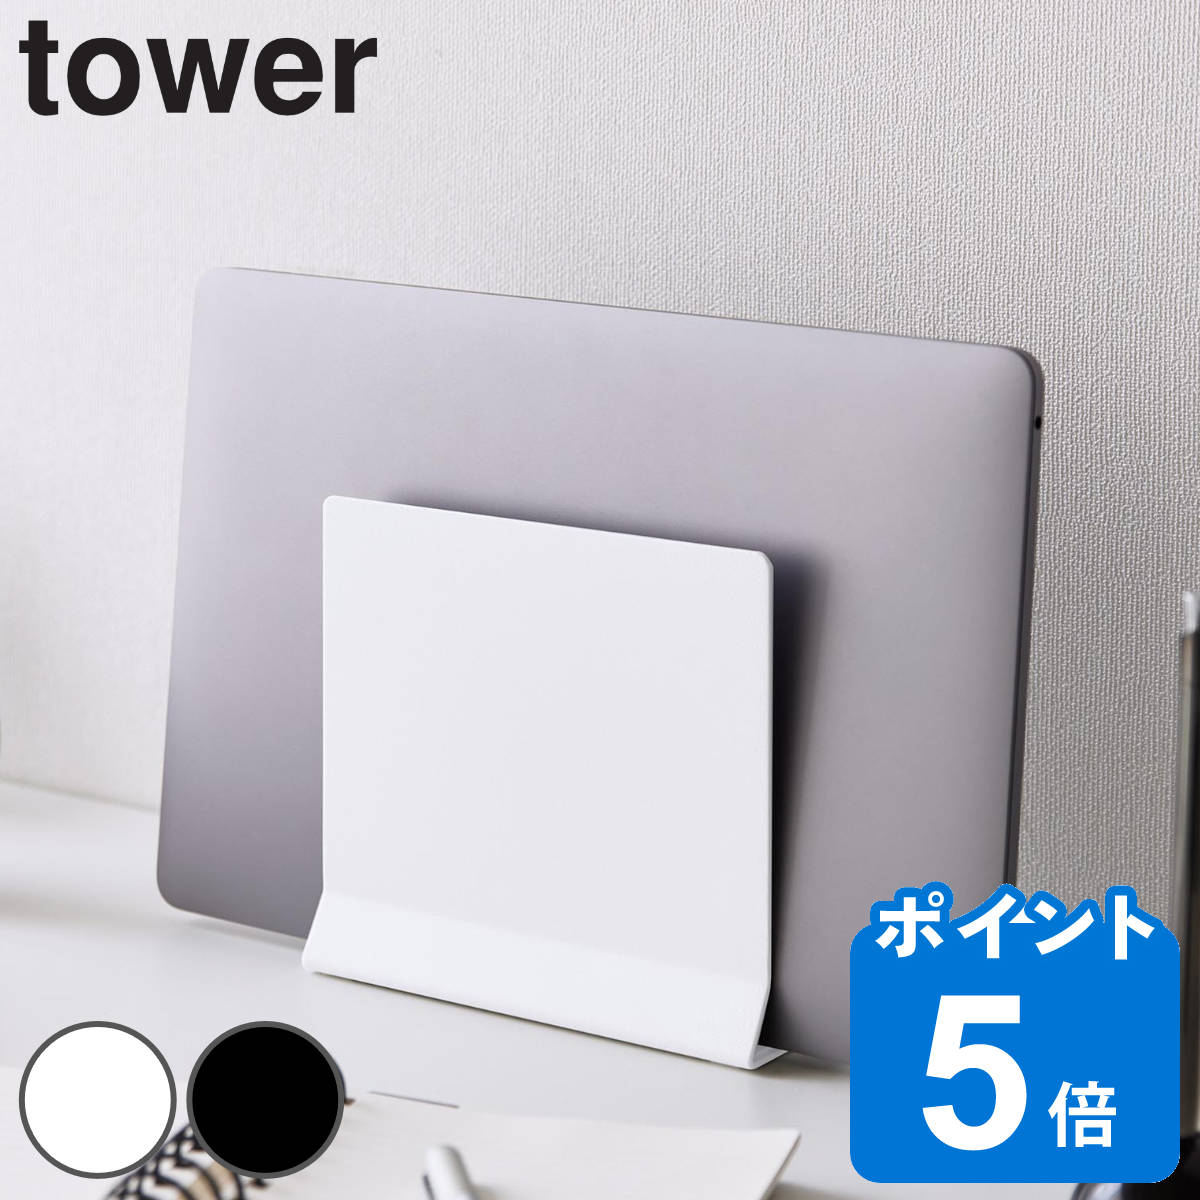 山崎実業 tower スリムノートパソコンスタンド タワー